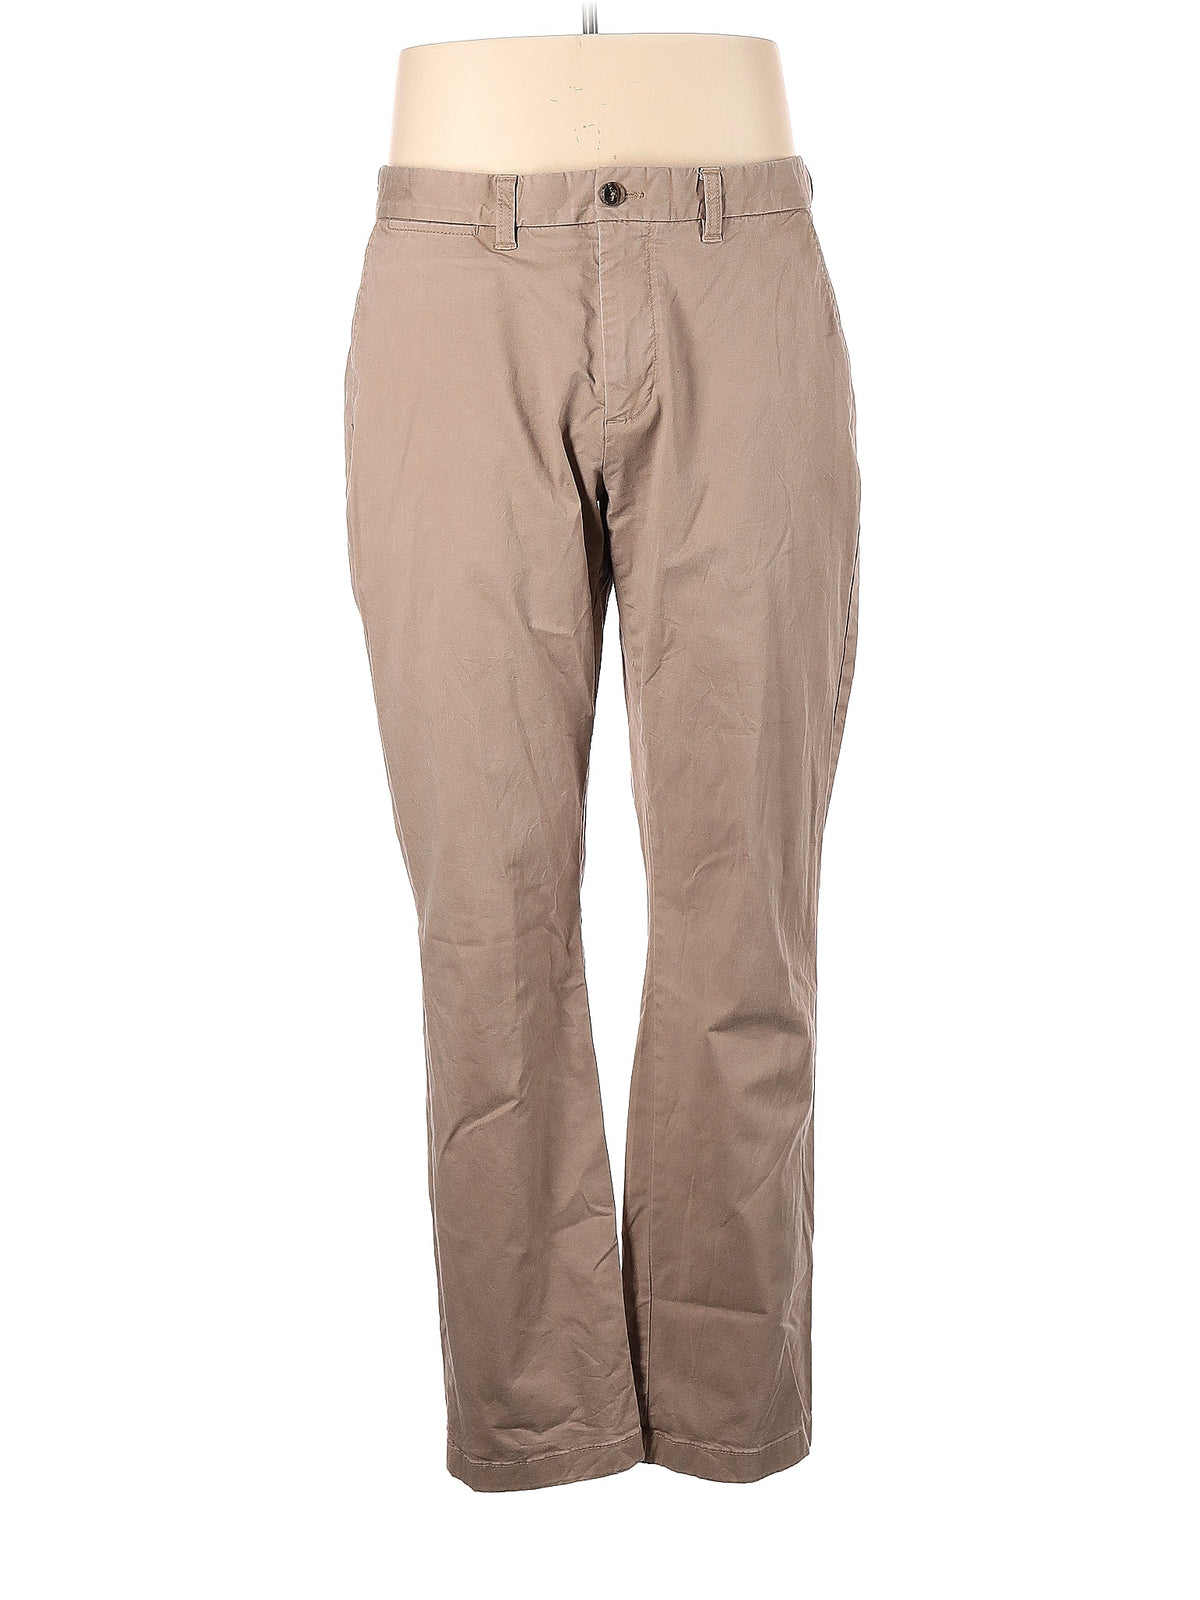 Khaki/Chino Pants size - 35 (W35 L32)